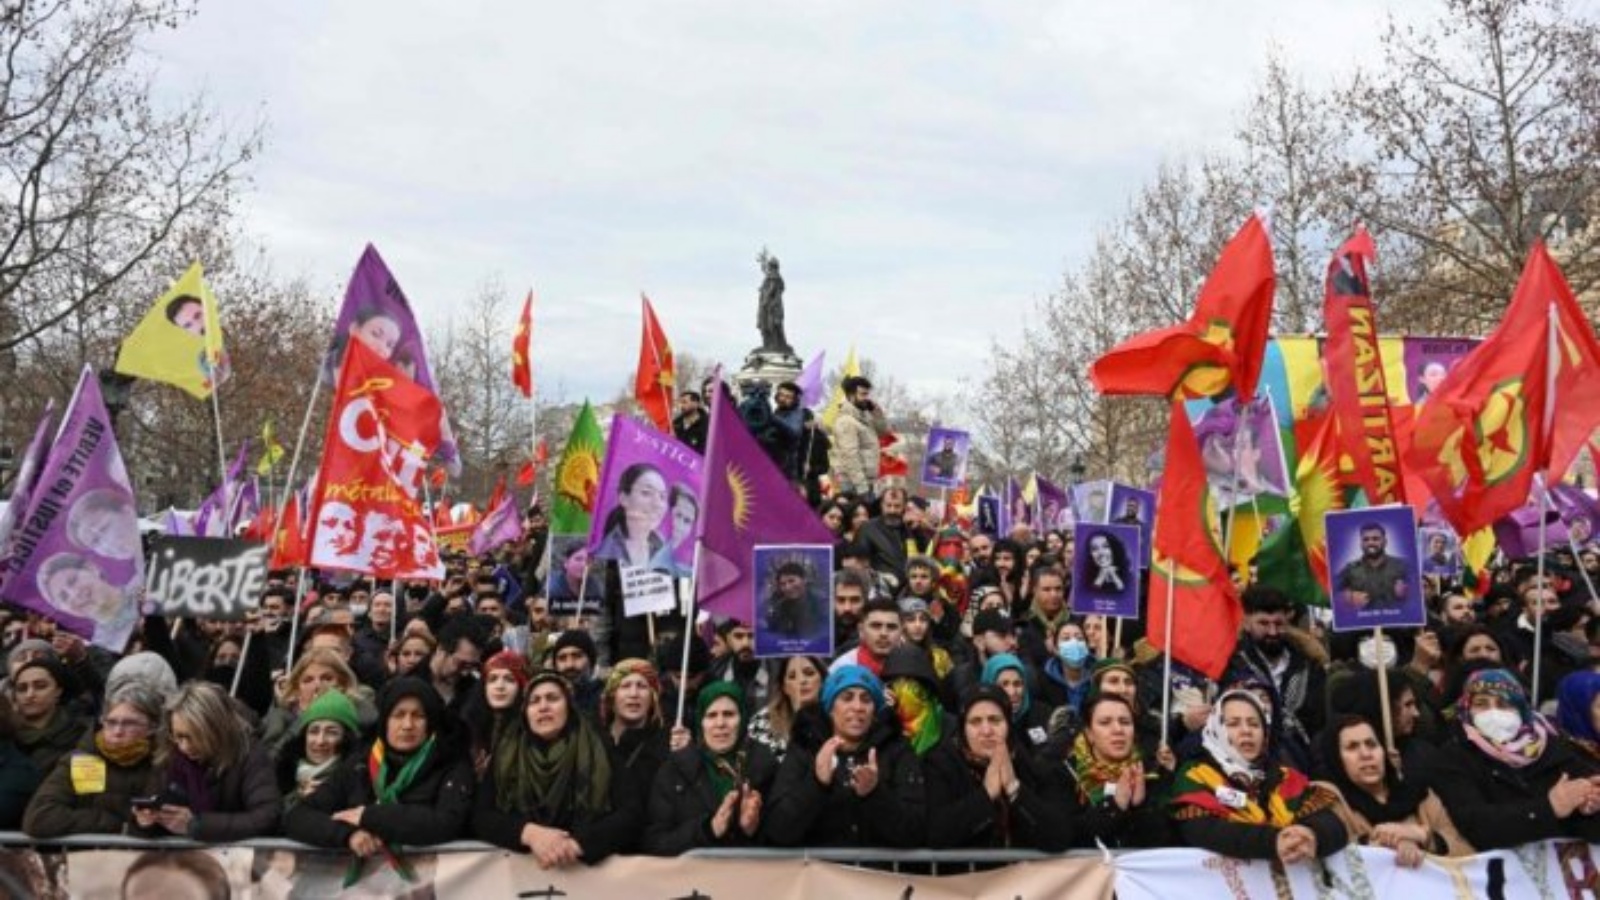 متظاهرون يتجمعون في ساحة الجمهورية خلال مسيرة إحياء لذكرى النشطاء الأكراد الثلاثة الذين قُتلوا في يناير 2013، في باريس